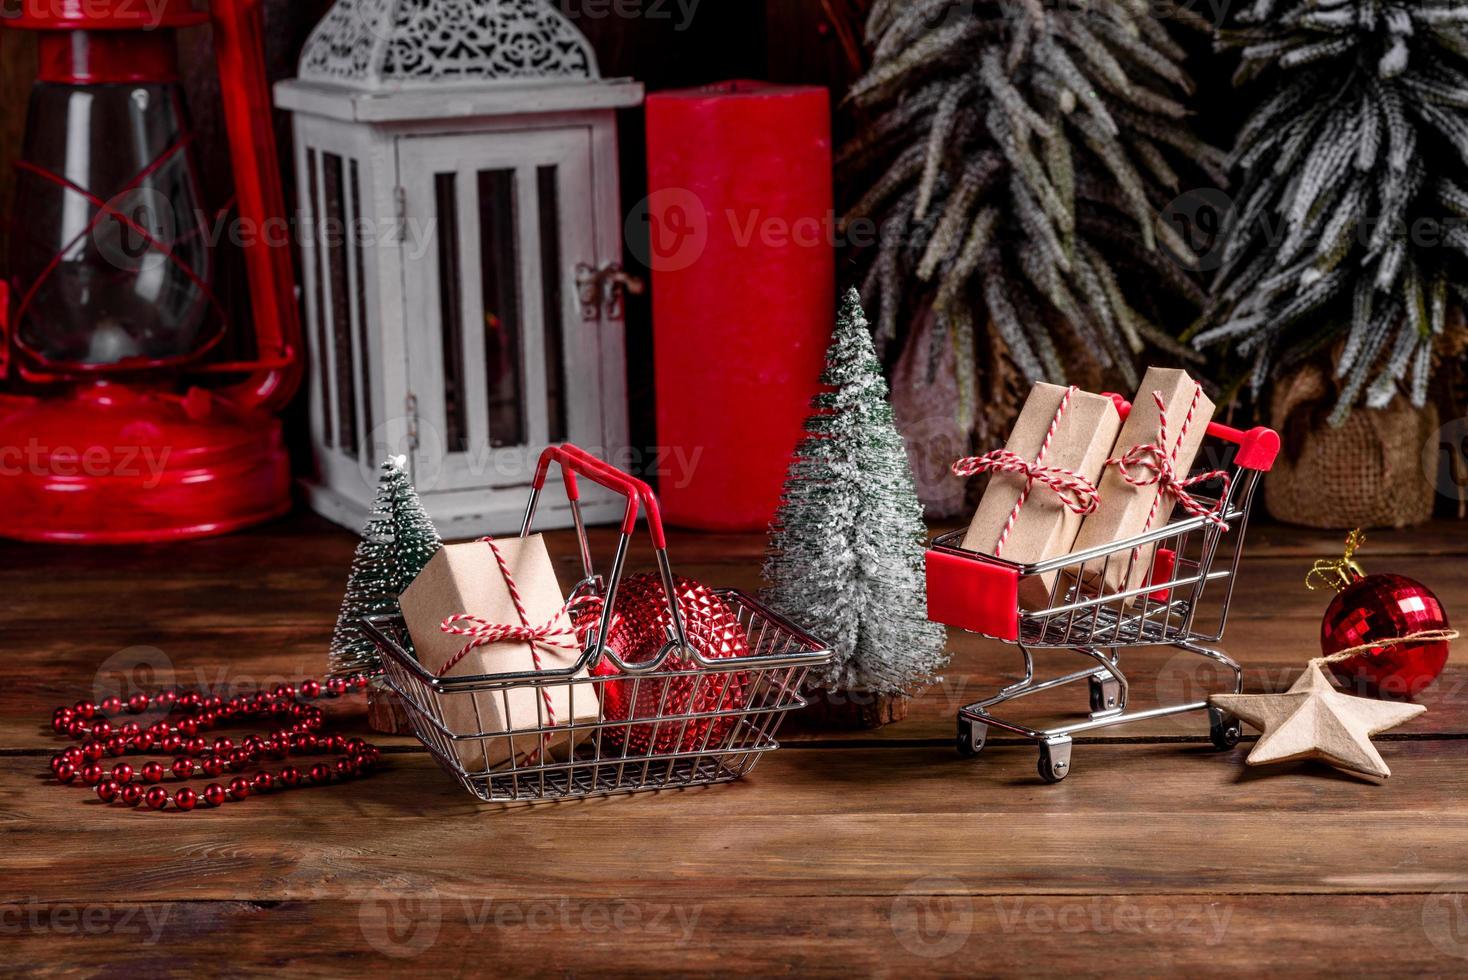 carrito de compras con regalos navideños y regalos navideños. foto